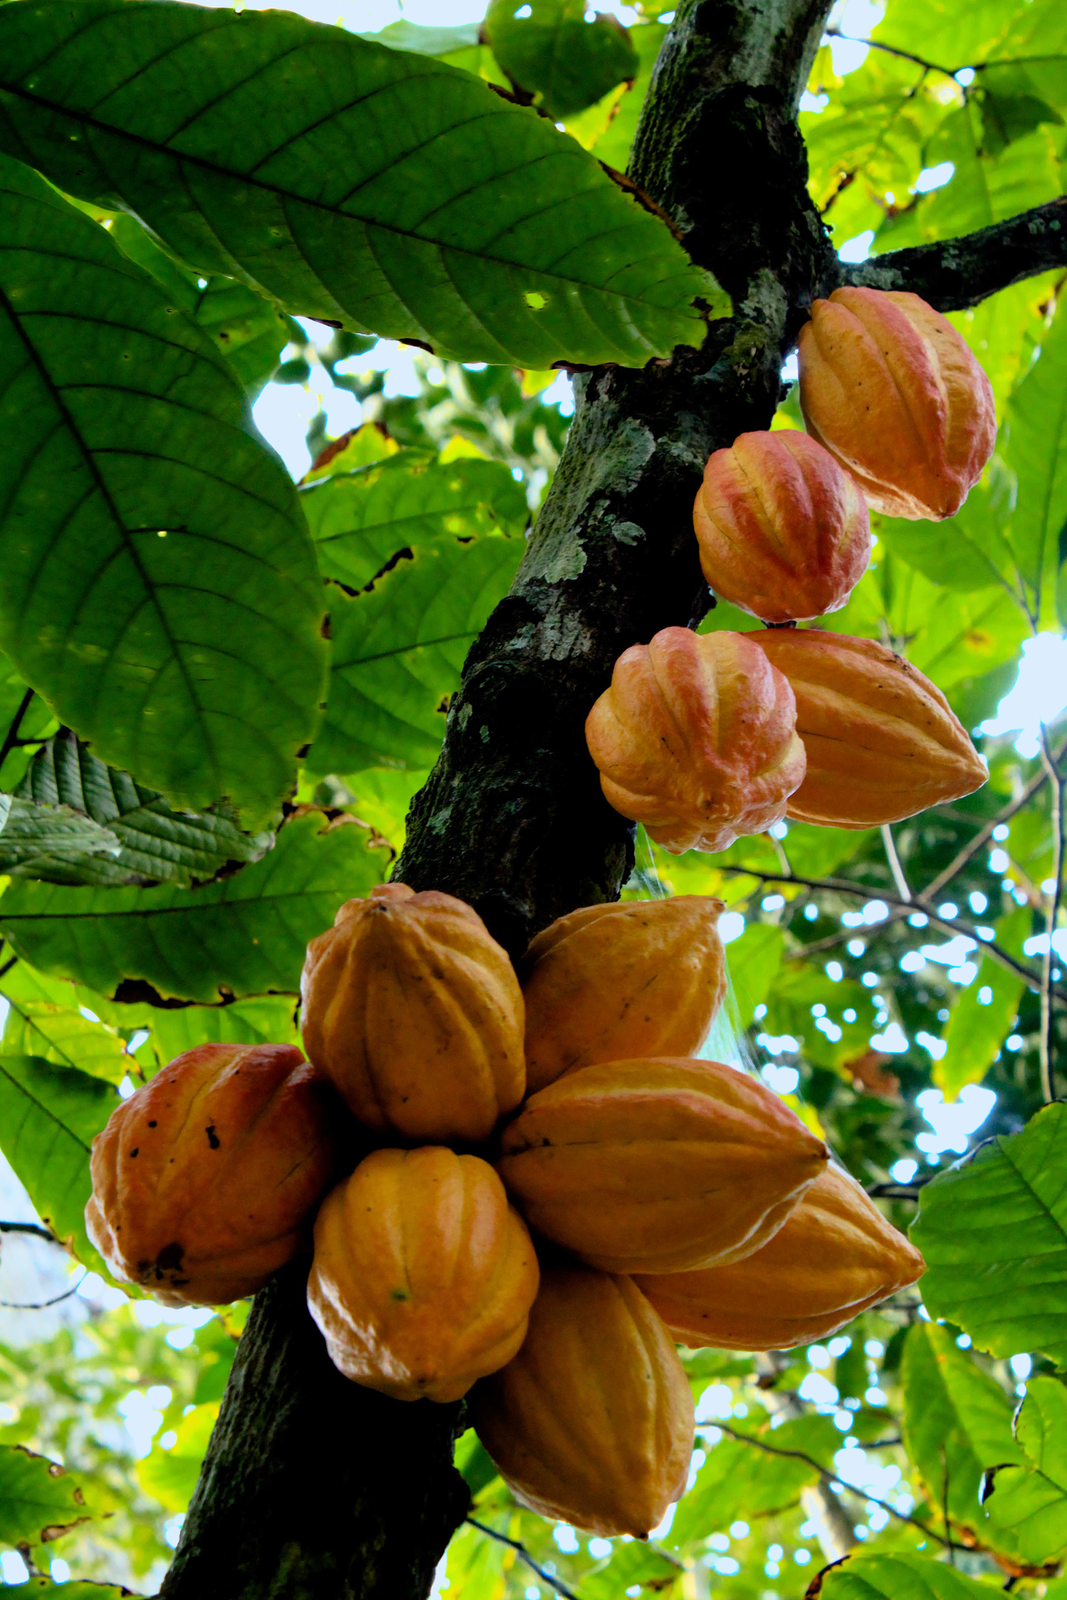 Grafika przedstawia zdjęcie krzewu kakaowca. Na zdjęciu znajduje się ciemnobrązowa gałąź, wokół której widoczne są zielone liście. Na gałęzi są owoce kakaowca. Są to pomarańczowe okrągłe jagody o owalnym wydłużonym kształcie.